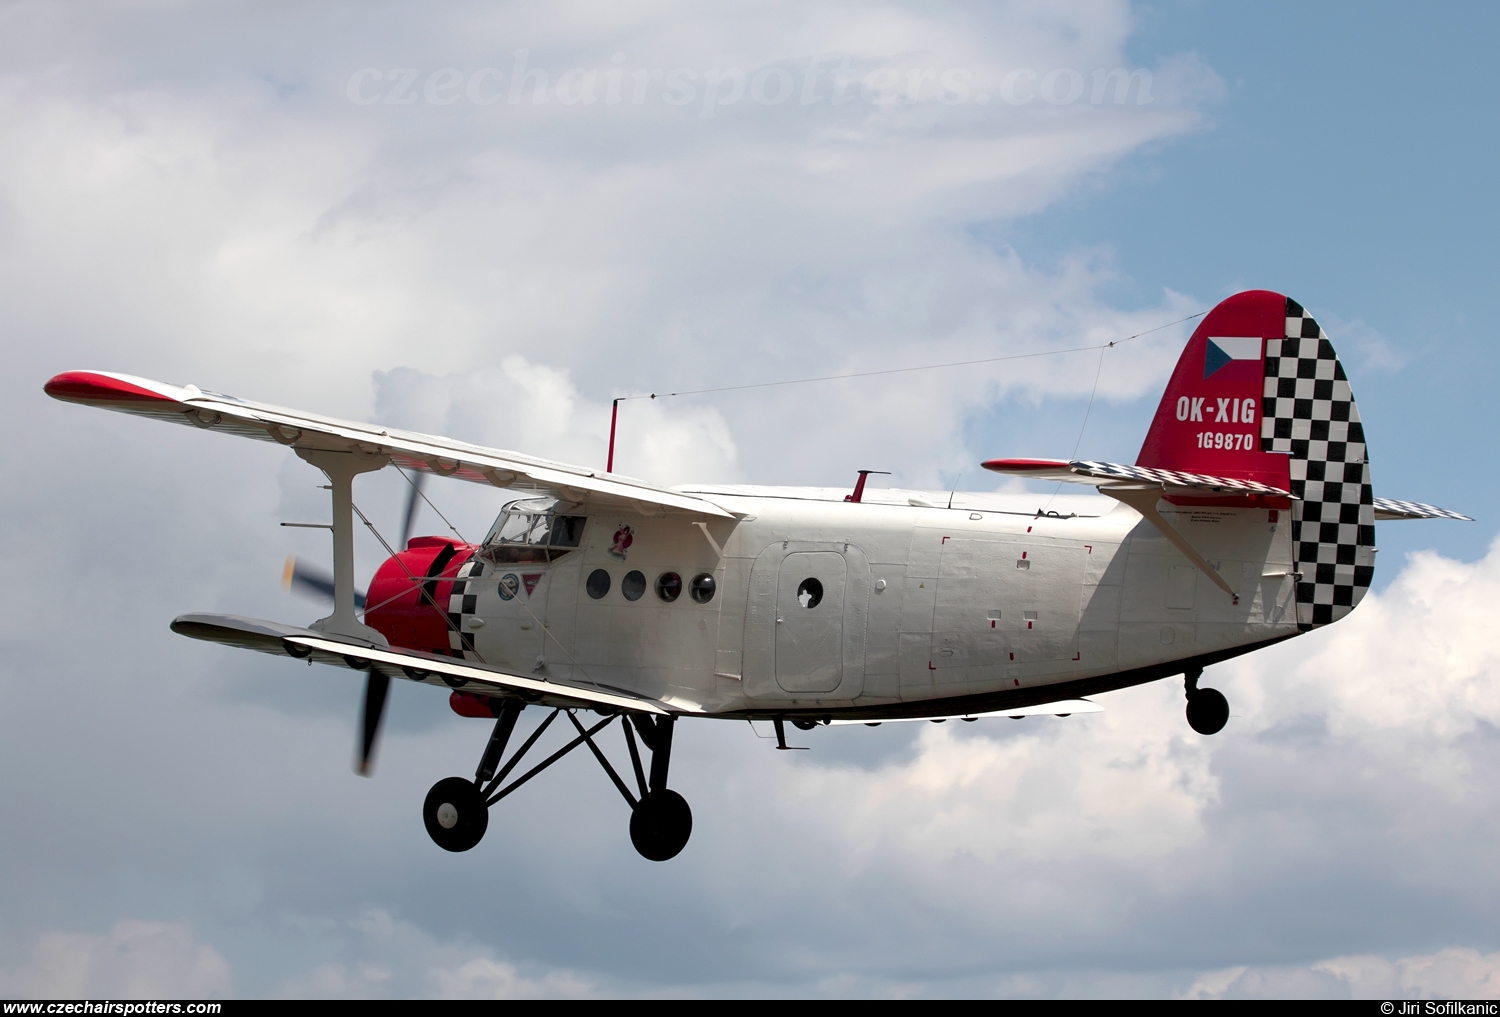 Heritage of Flying Legends – Antonov An-2T OK-XIG